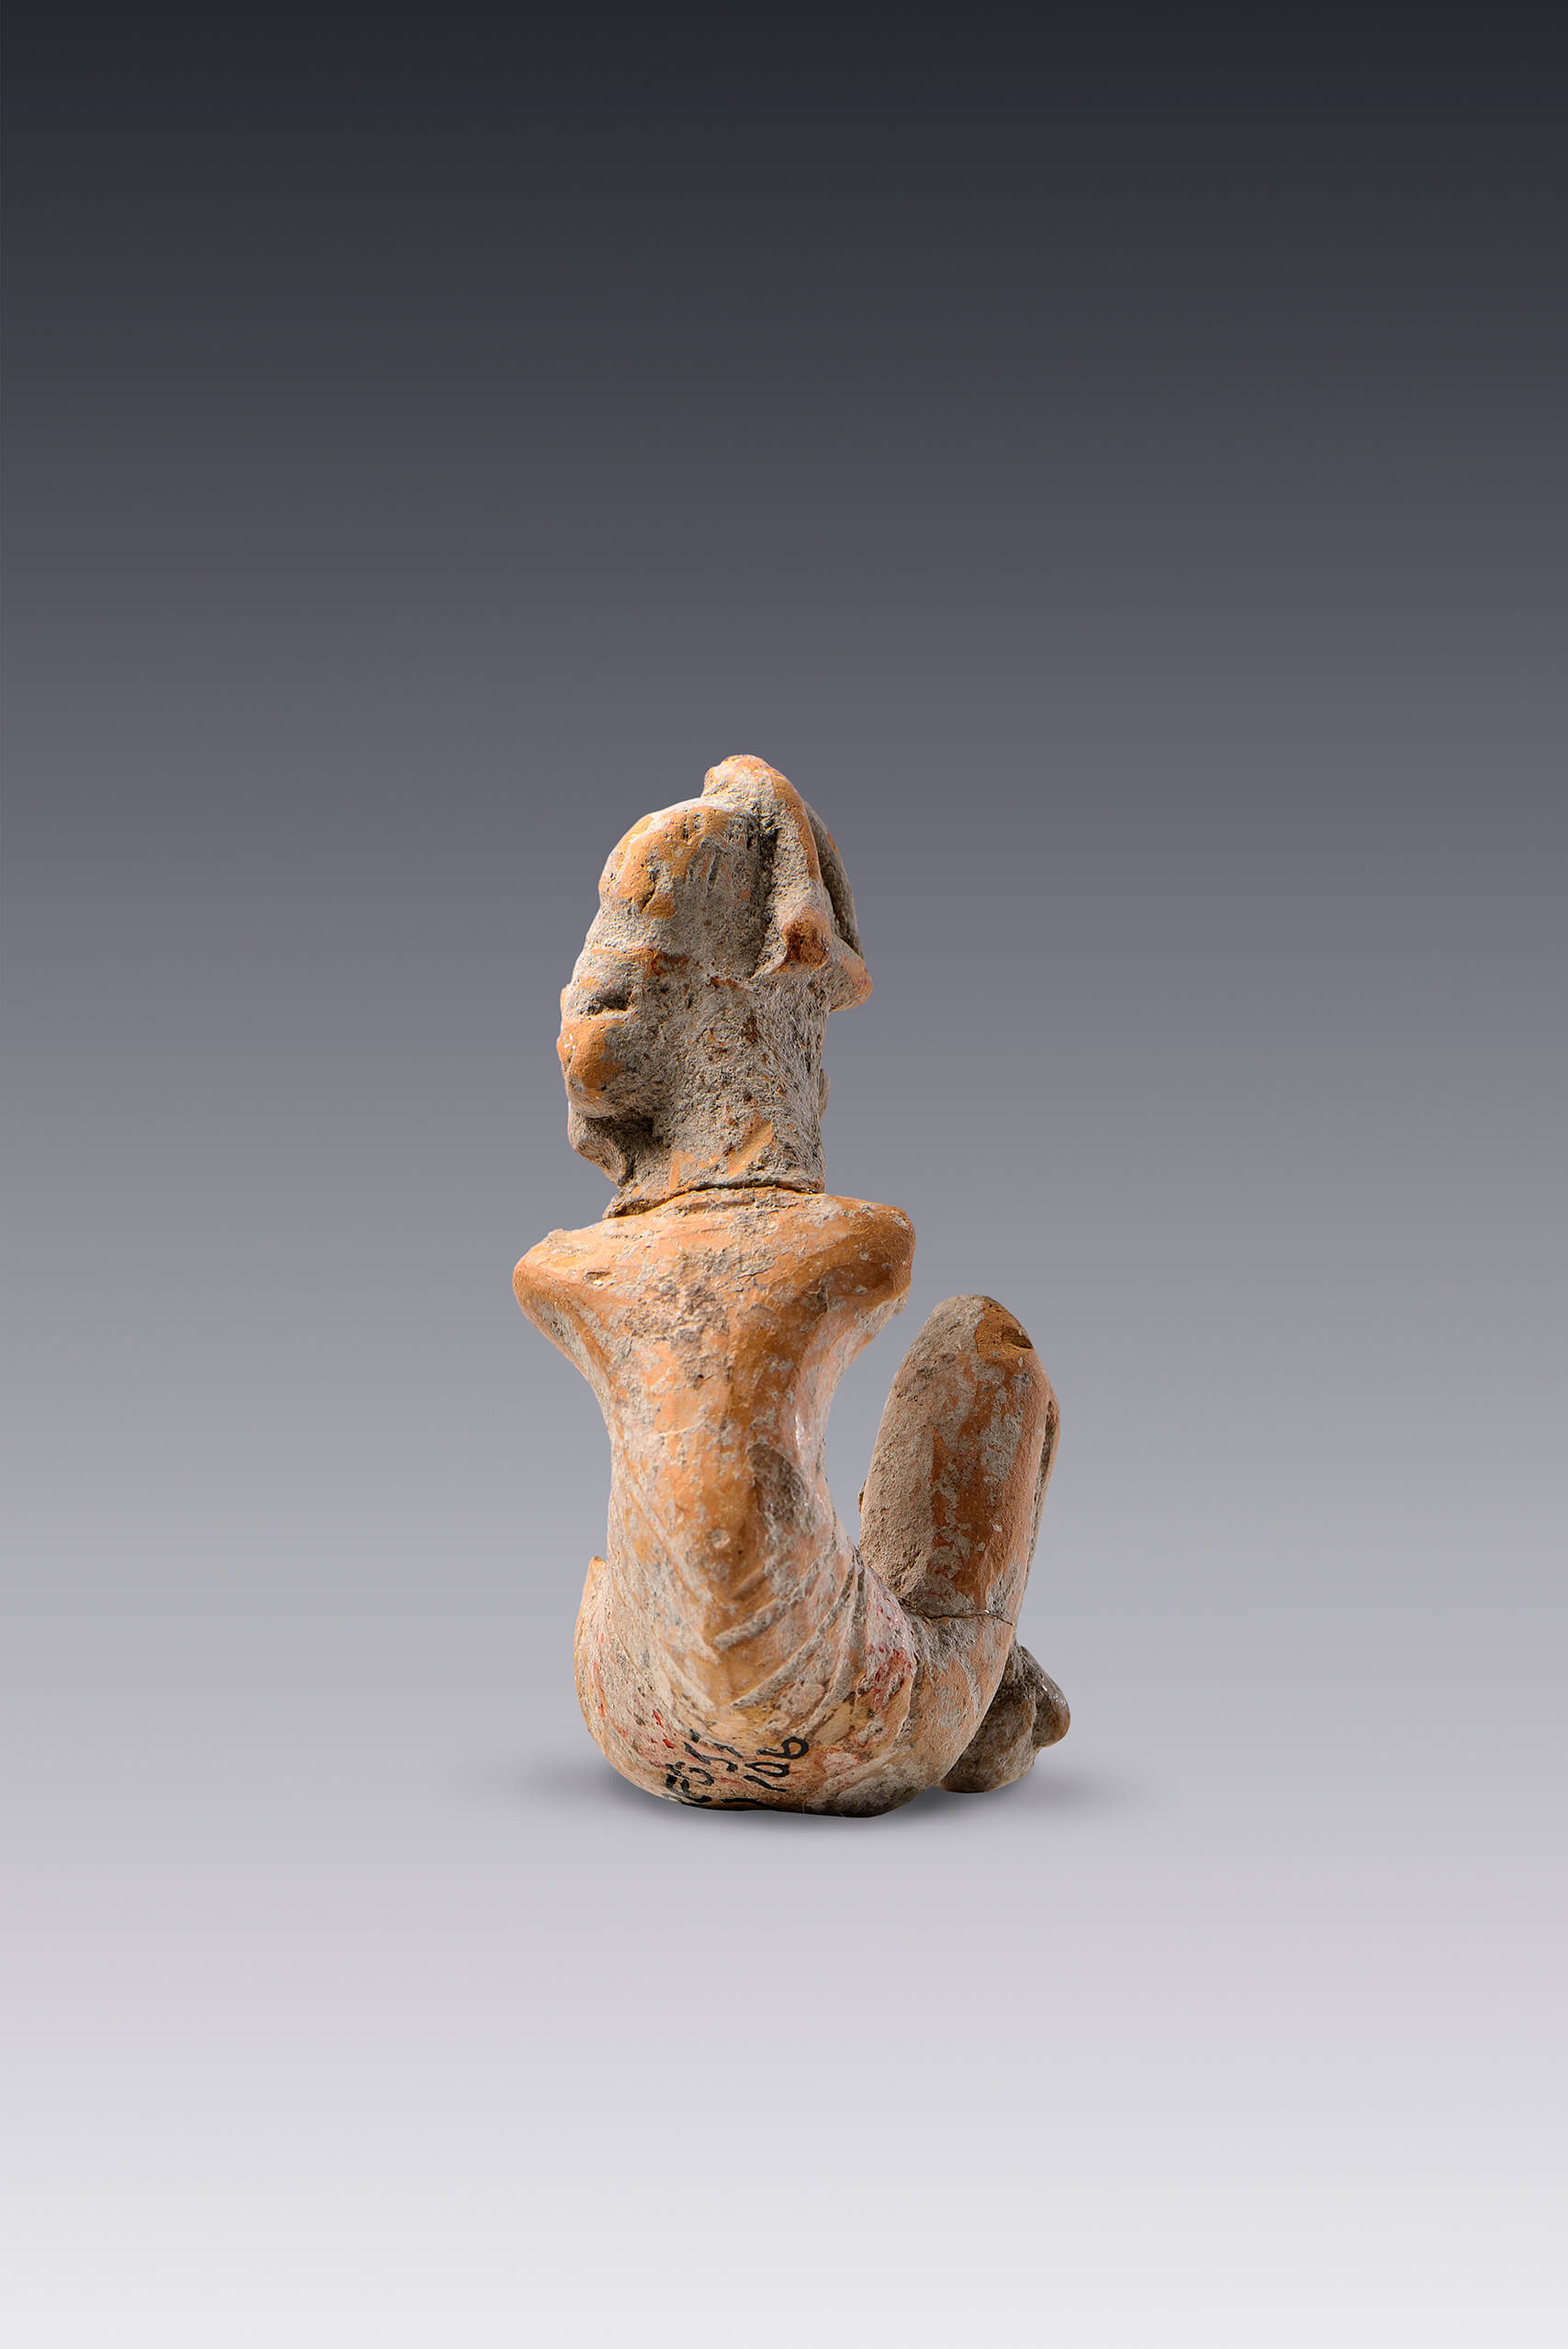 Figurilla sedente con columna deforme | El tiempo en las cosas II. Salas de Arte Contemporáneo | Museo Amparo, Puebla